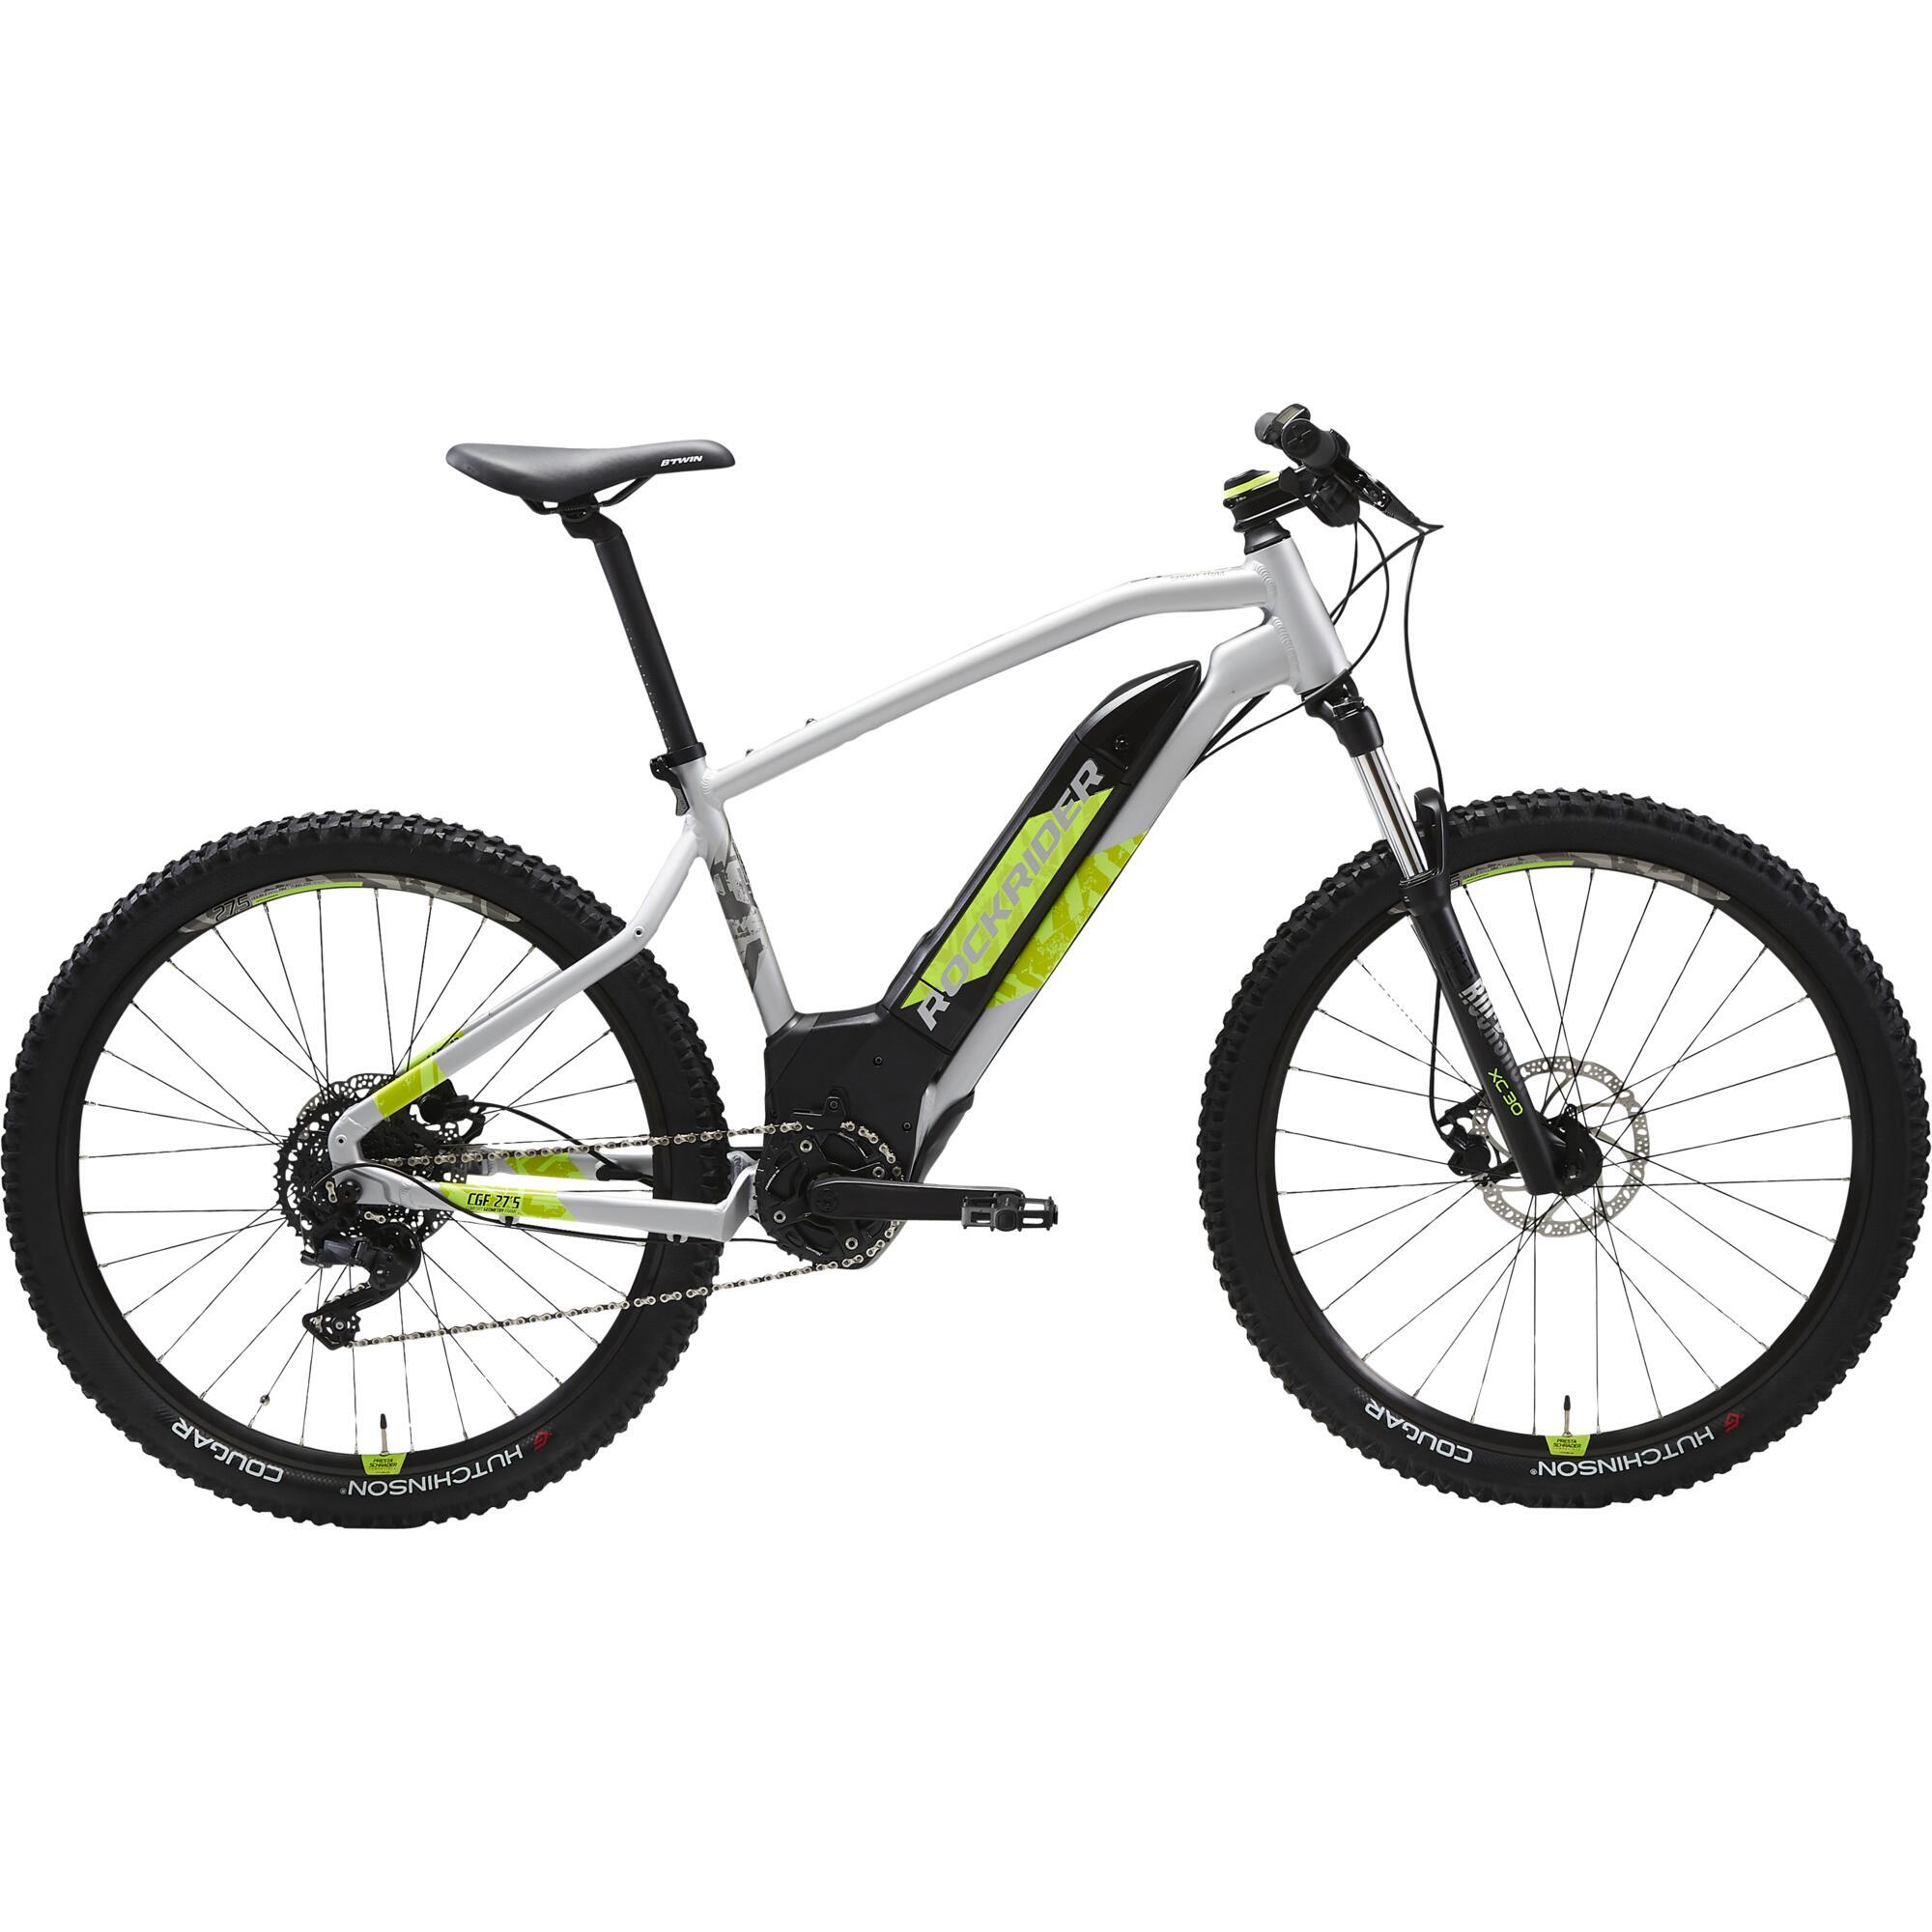 Bicicletă electrică MTB E-ST 520 27,5″ Gri-Galben 275"- imagine 2022